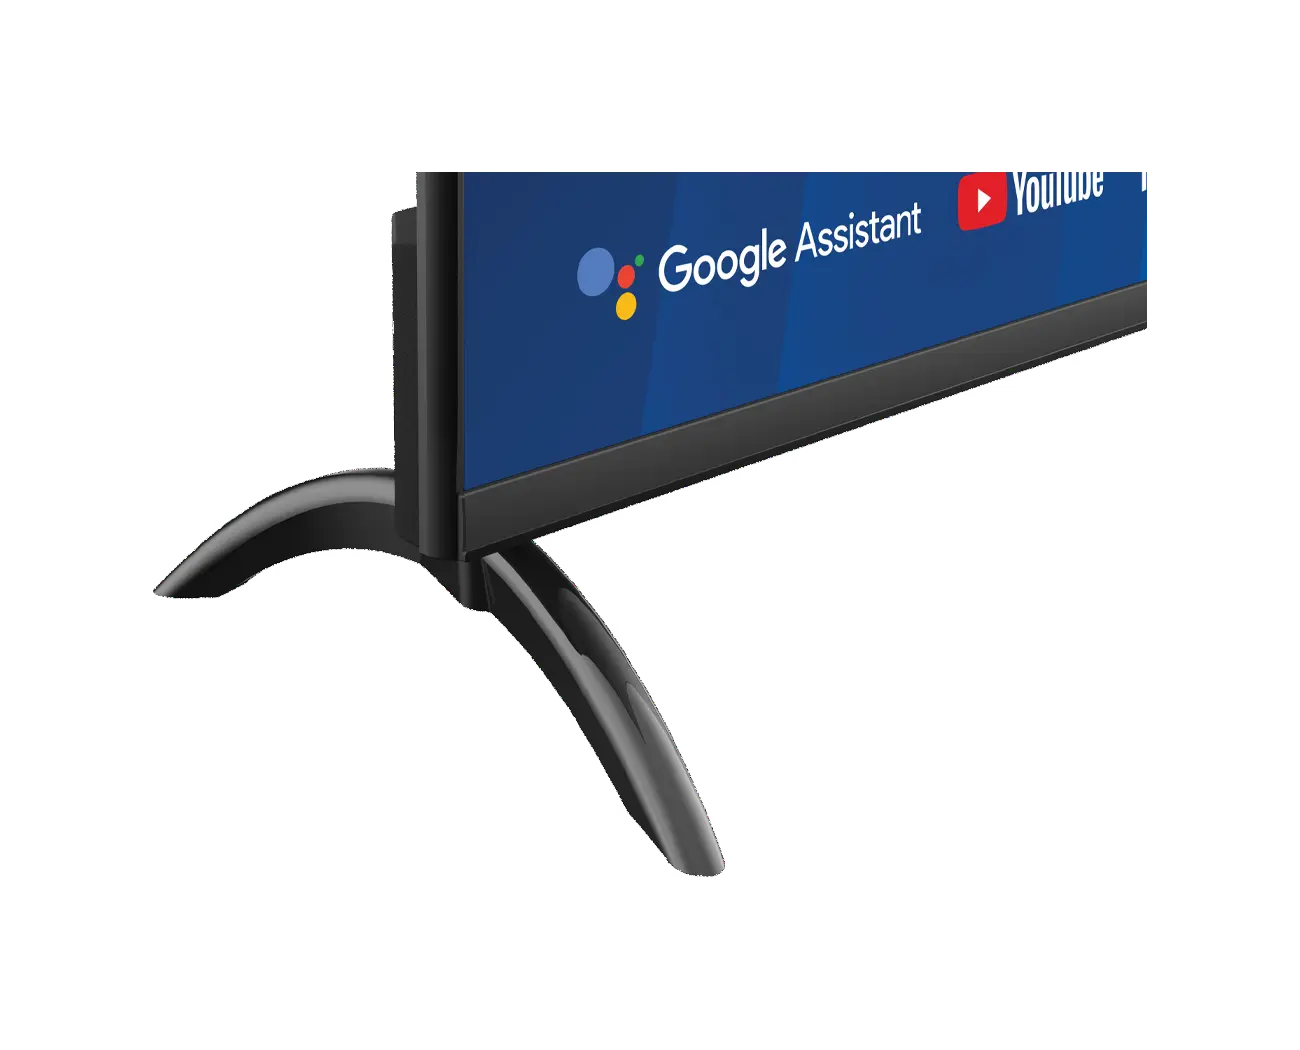 UHD 4K Google TV Blaupunkt 43QBG7000